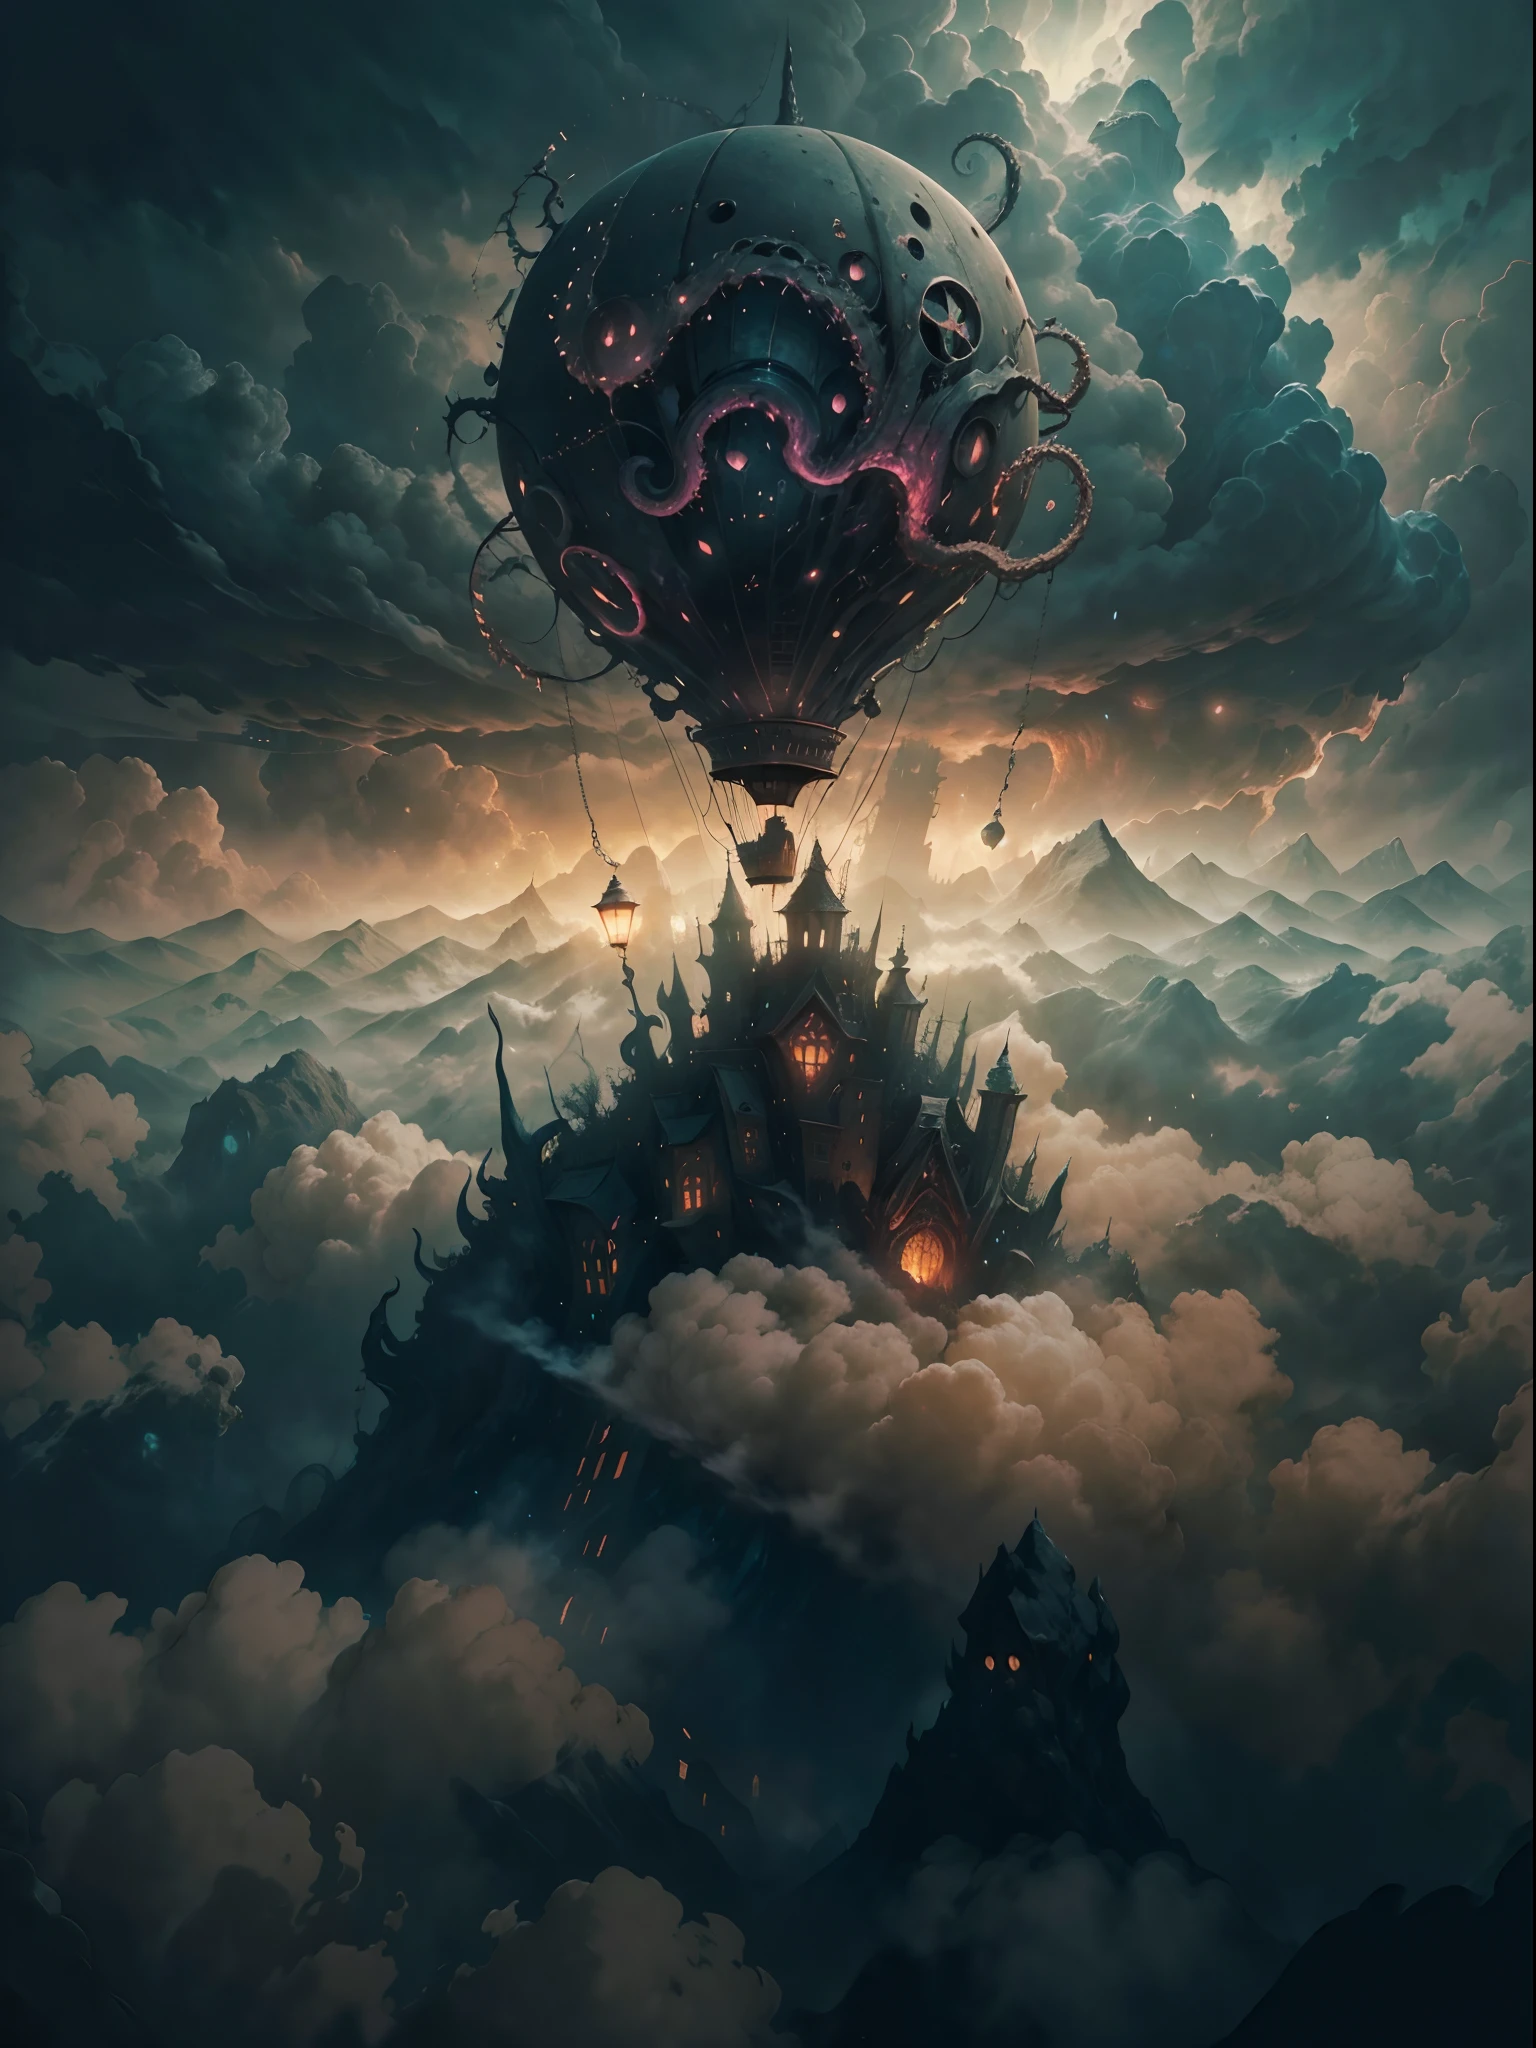 Nahaufnahme eines Heißluftballons, der über den Wolken fliegt, glühend vor überirdischer Energie,HP.Lovecraft-Stil, (beste Qualität,4k,8k,highres,Meisterwerk:1.2), ultra-detailliert, Realistisch:1.37, surreale, traumhafte Atmosphäre, unheimliche Beleuchtung, bedrohliche Schatten, Wirbelnder Nebel, gotische Ästhetik, alter kosmischer Horror, außerweltliche Wesen, Tentakeln, die aus den Wolken auftauchen, unheimliche Symbole, mysteriöse Artefakte, geheimnisvolles Licht erhellt die Szene, dunkle und düstere Farben, starke Kontraste, unvergesslich schöne Landschaft, immense scale, Vorahnung von Unbehagen.